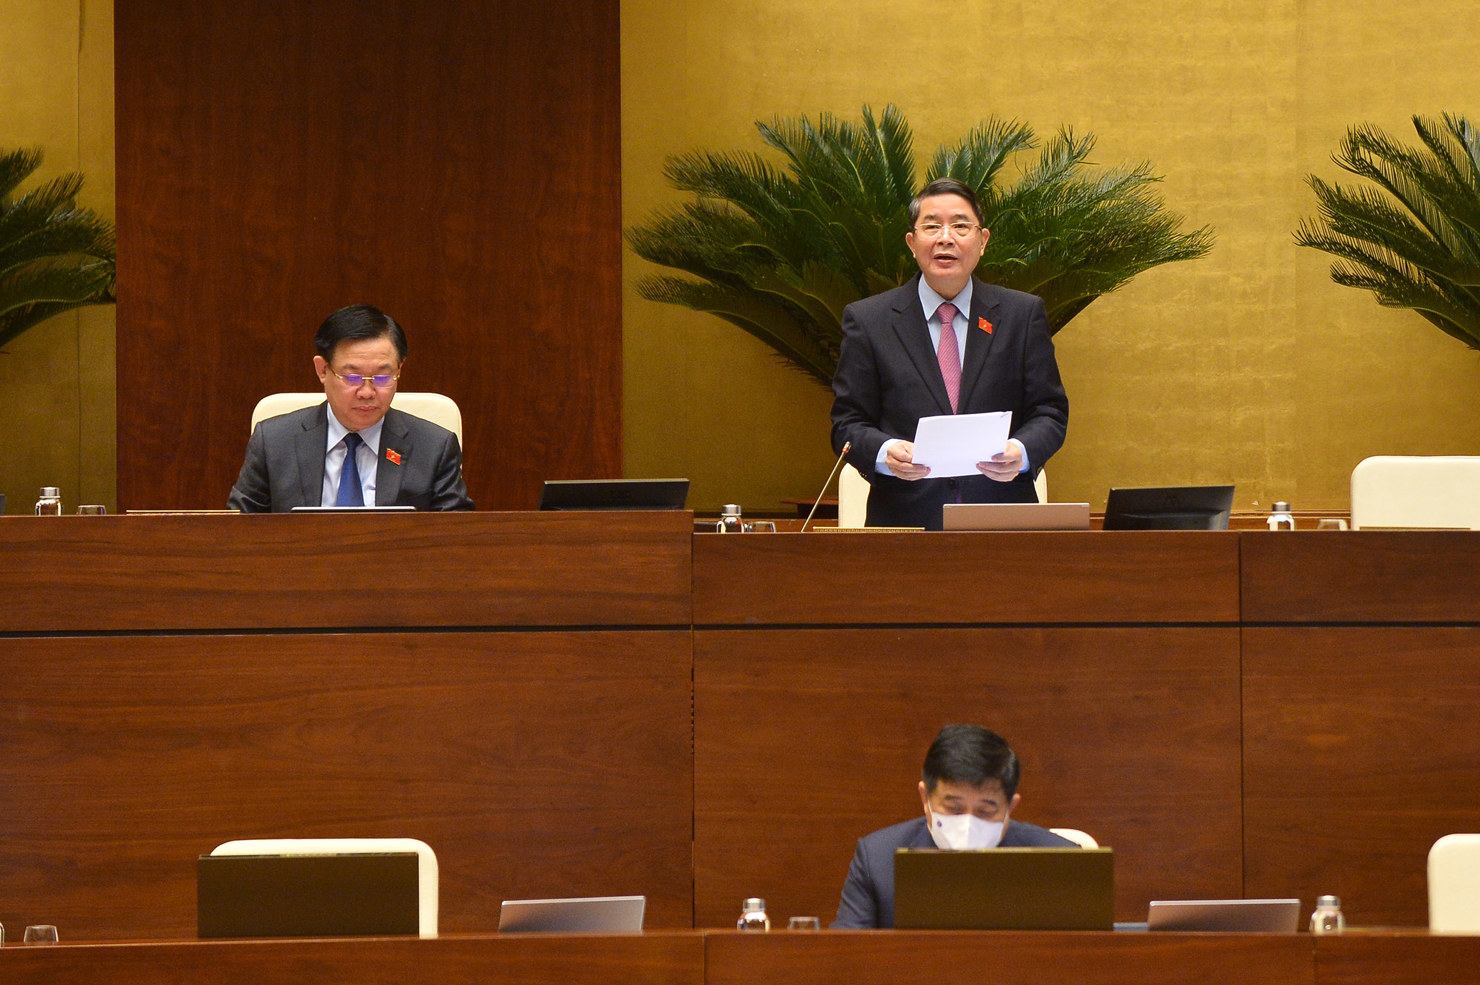 Phó Chủ tịch Quốc hội Nguyễn Đức Hải điều hành nội dung thảo luận dự thảo Nghị quyết về chính sách tài khóa, tiền tệ để hỗ trợ Chương trình phục hồi và phát triển kinh tế - xã hội.